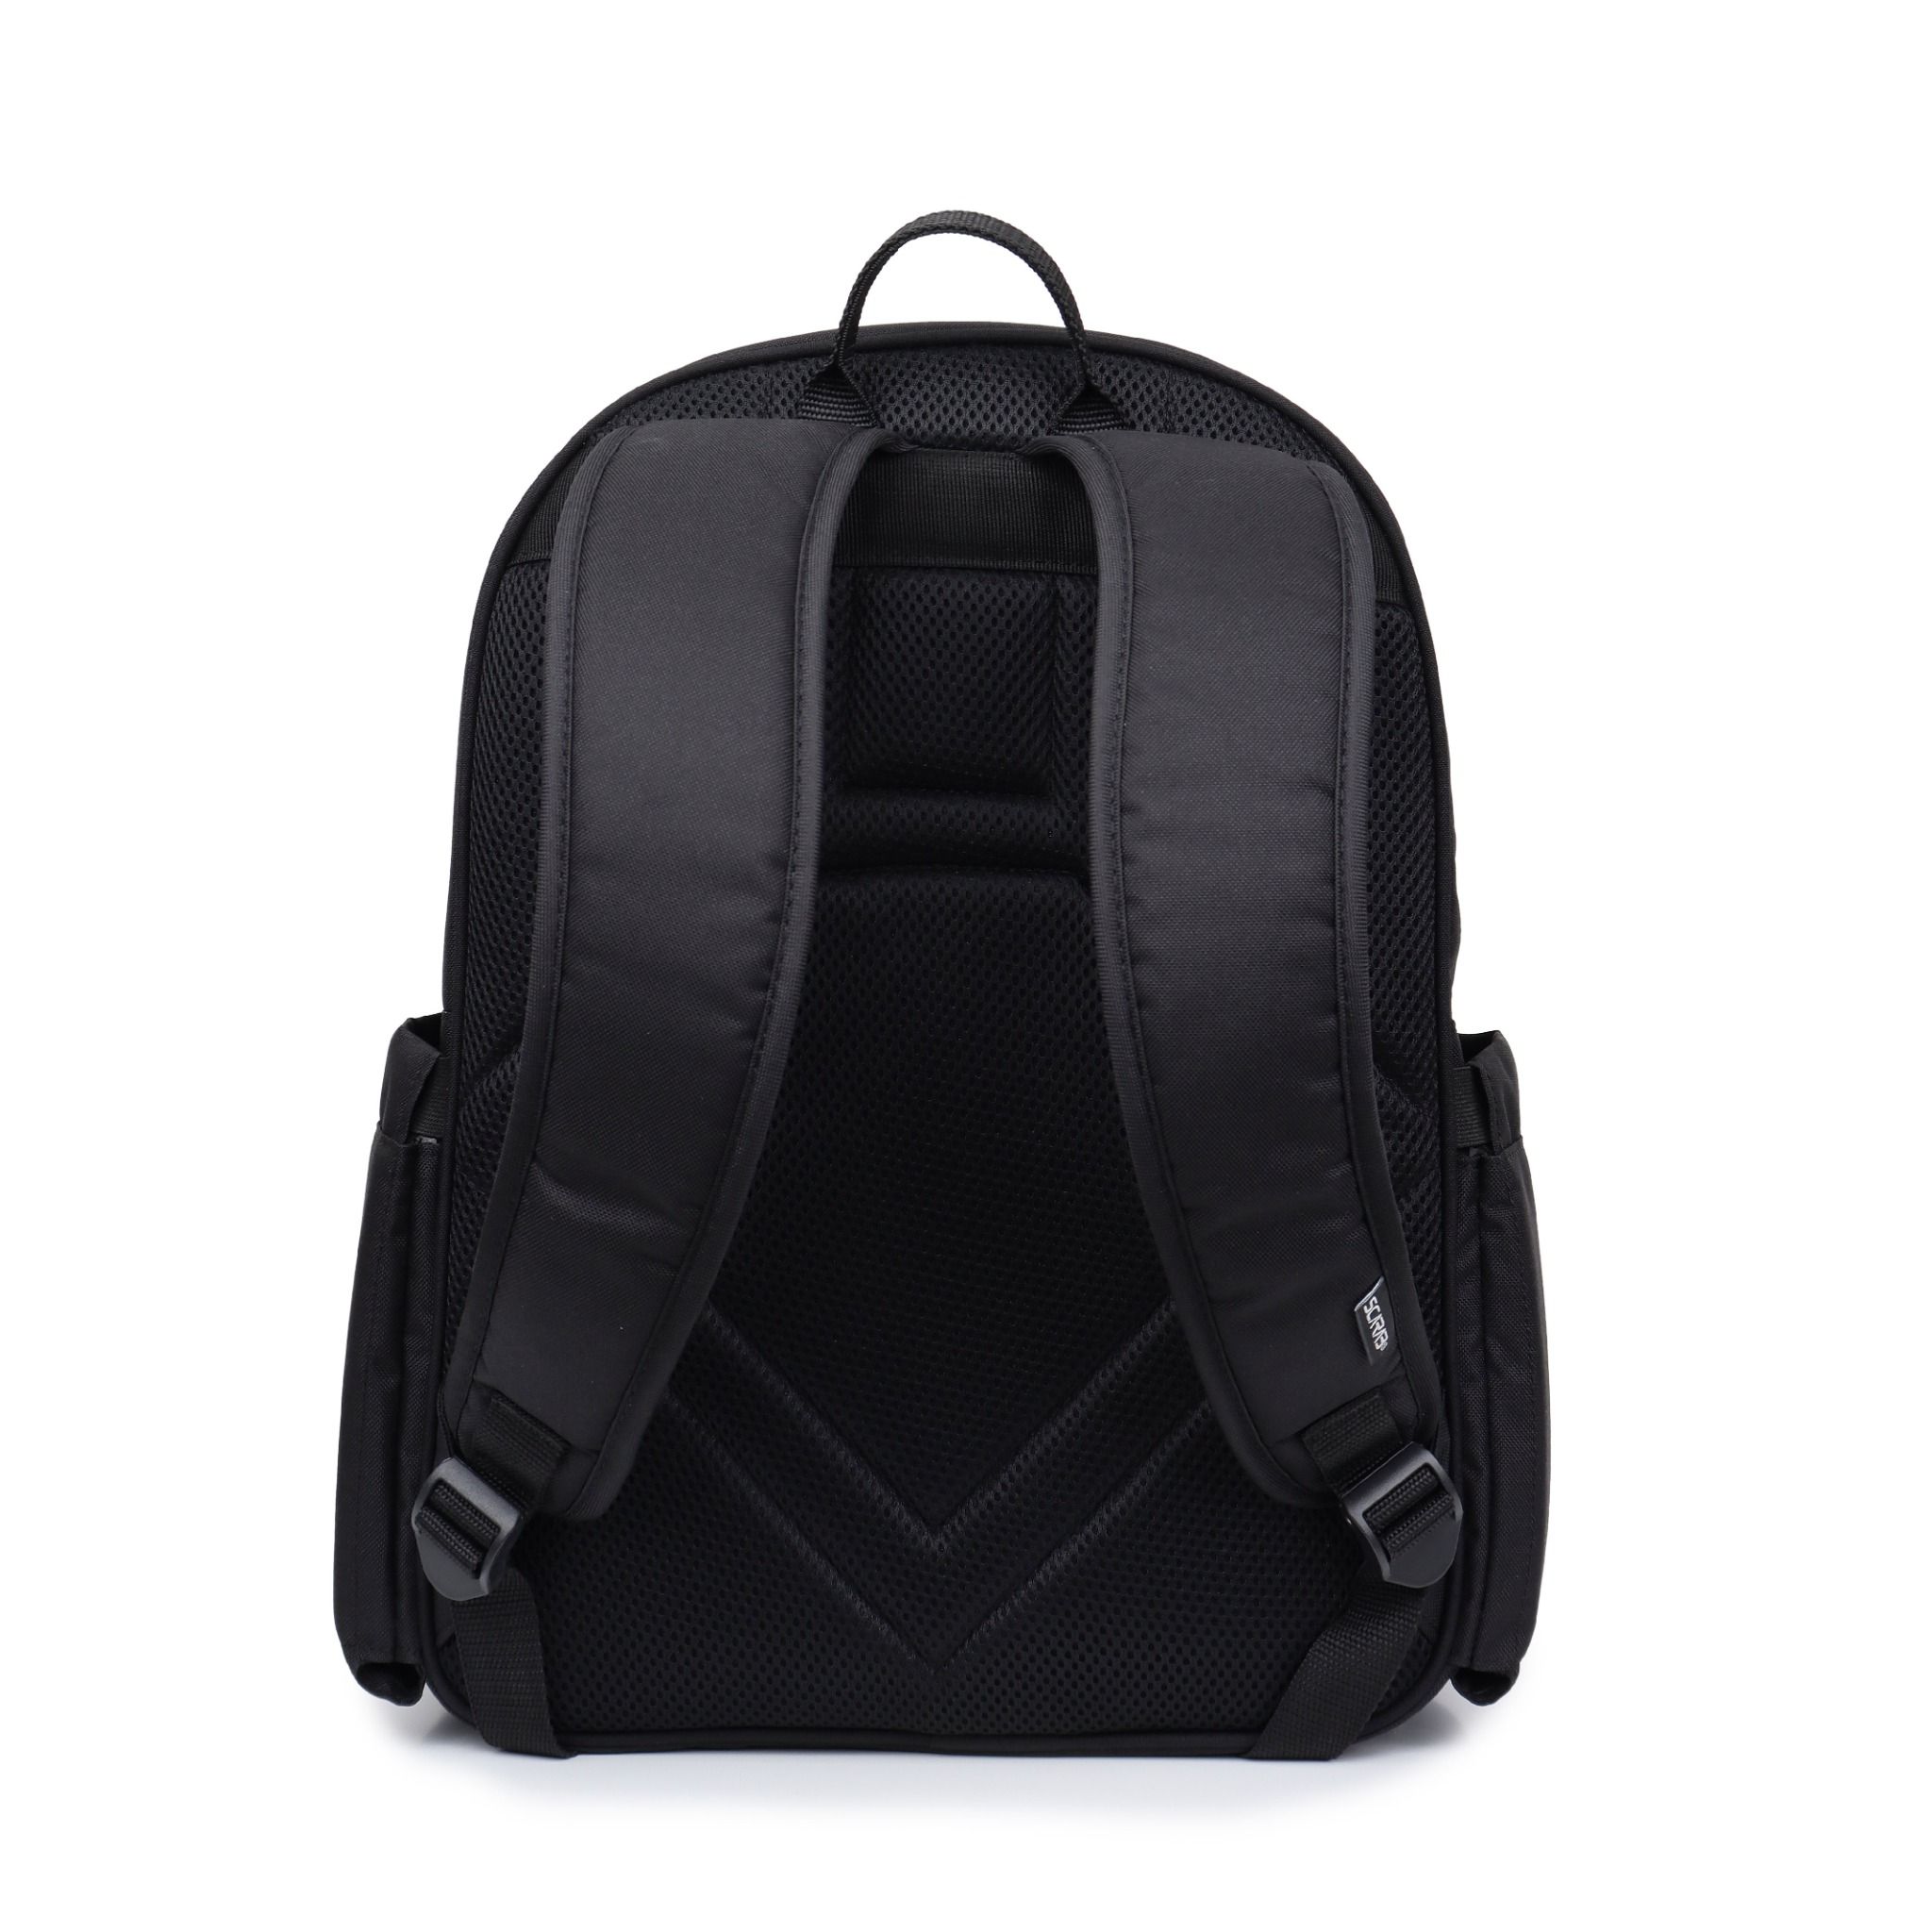  Daypack Backpack - Black 